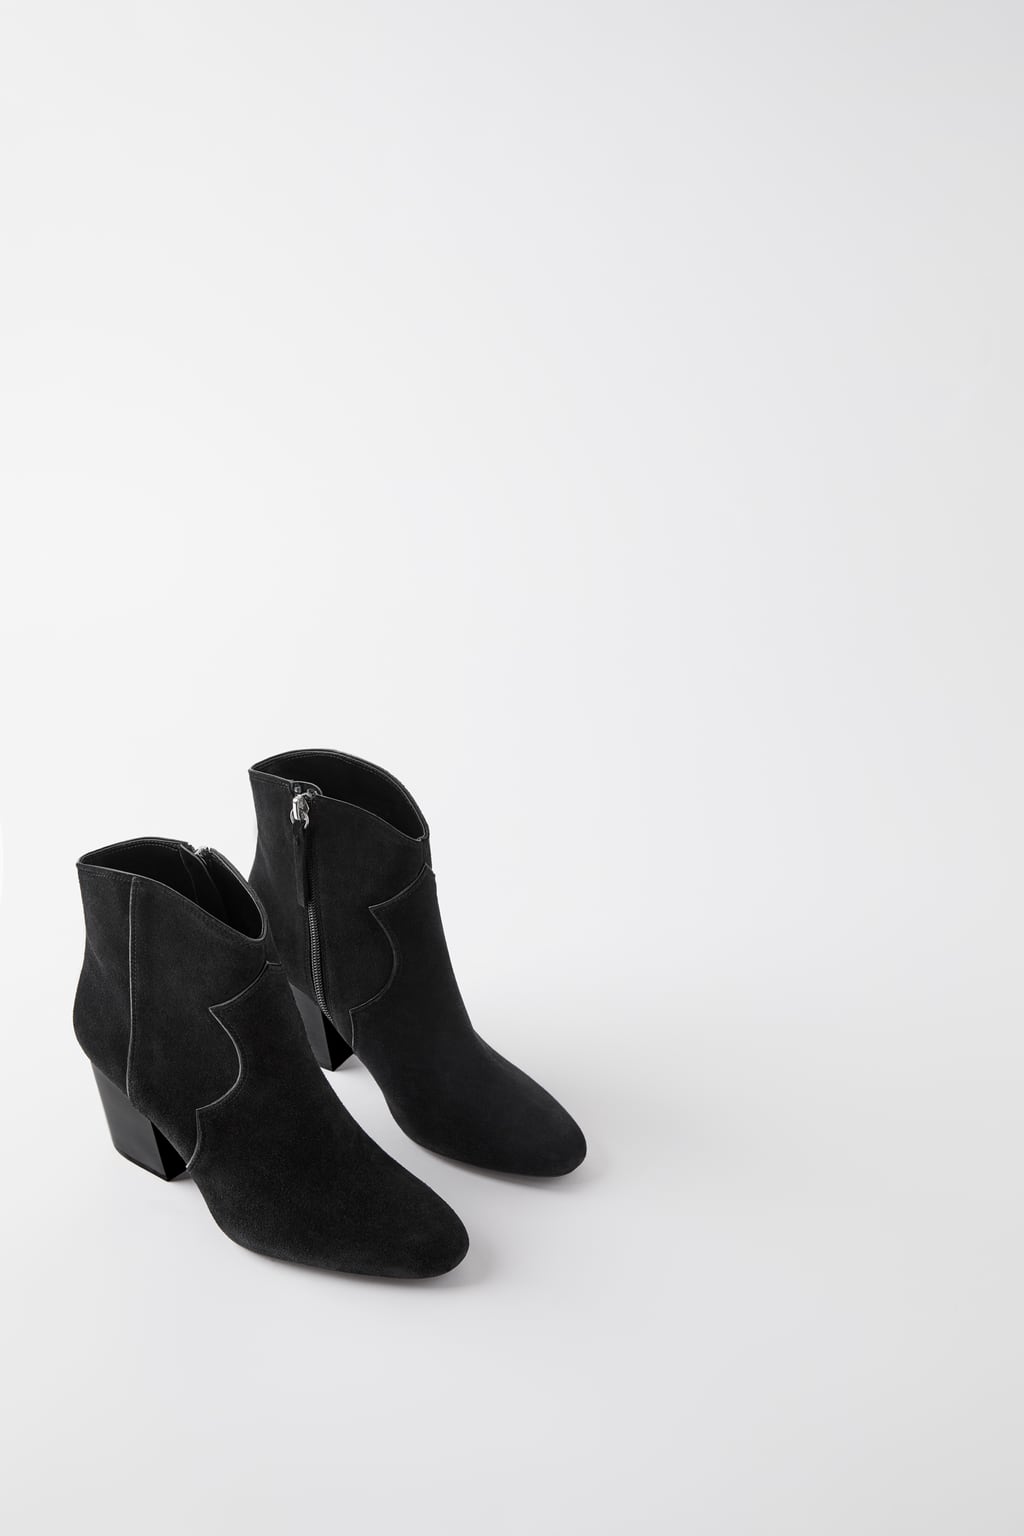 envío vistazo Tratamiento Botines de mujer Zara 2019, las tendencias del otoño en calzado. Cowboy,  camperos y metalizados - Modalia.es